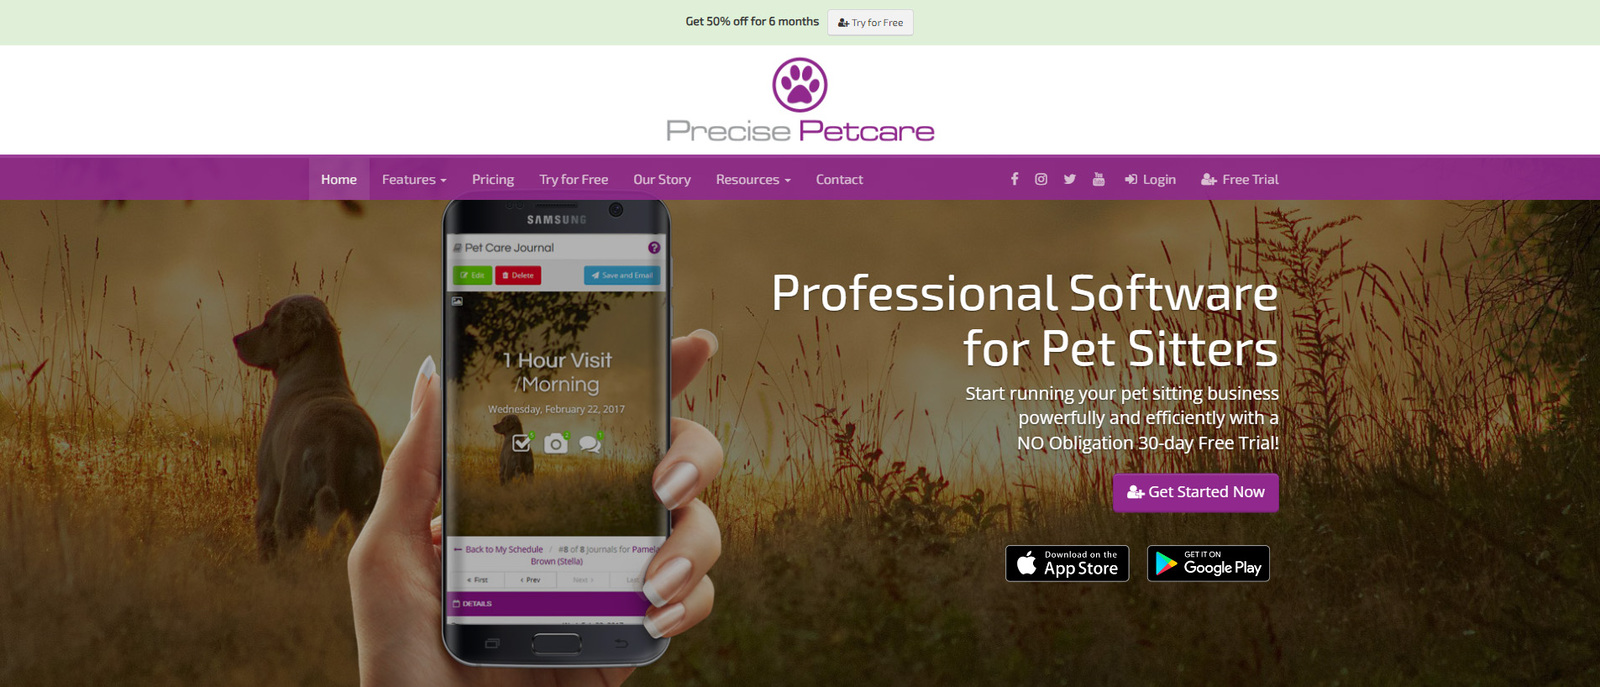 ペットの散歩者にとって最高のペットケア ソフトウェア オプションの 1 つである Precise Petcare のイメージ。